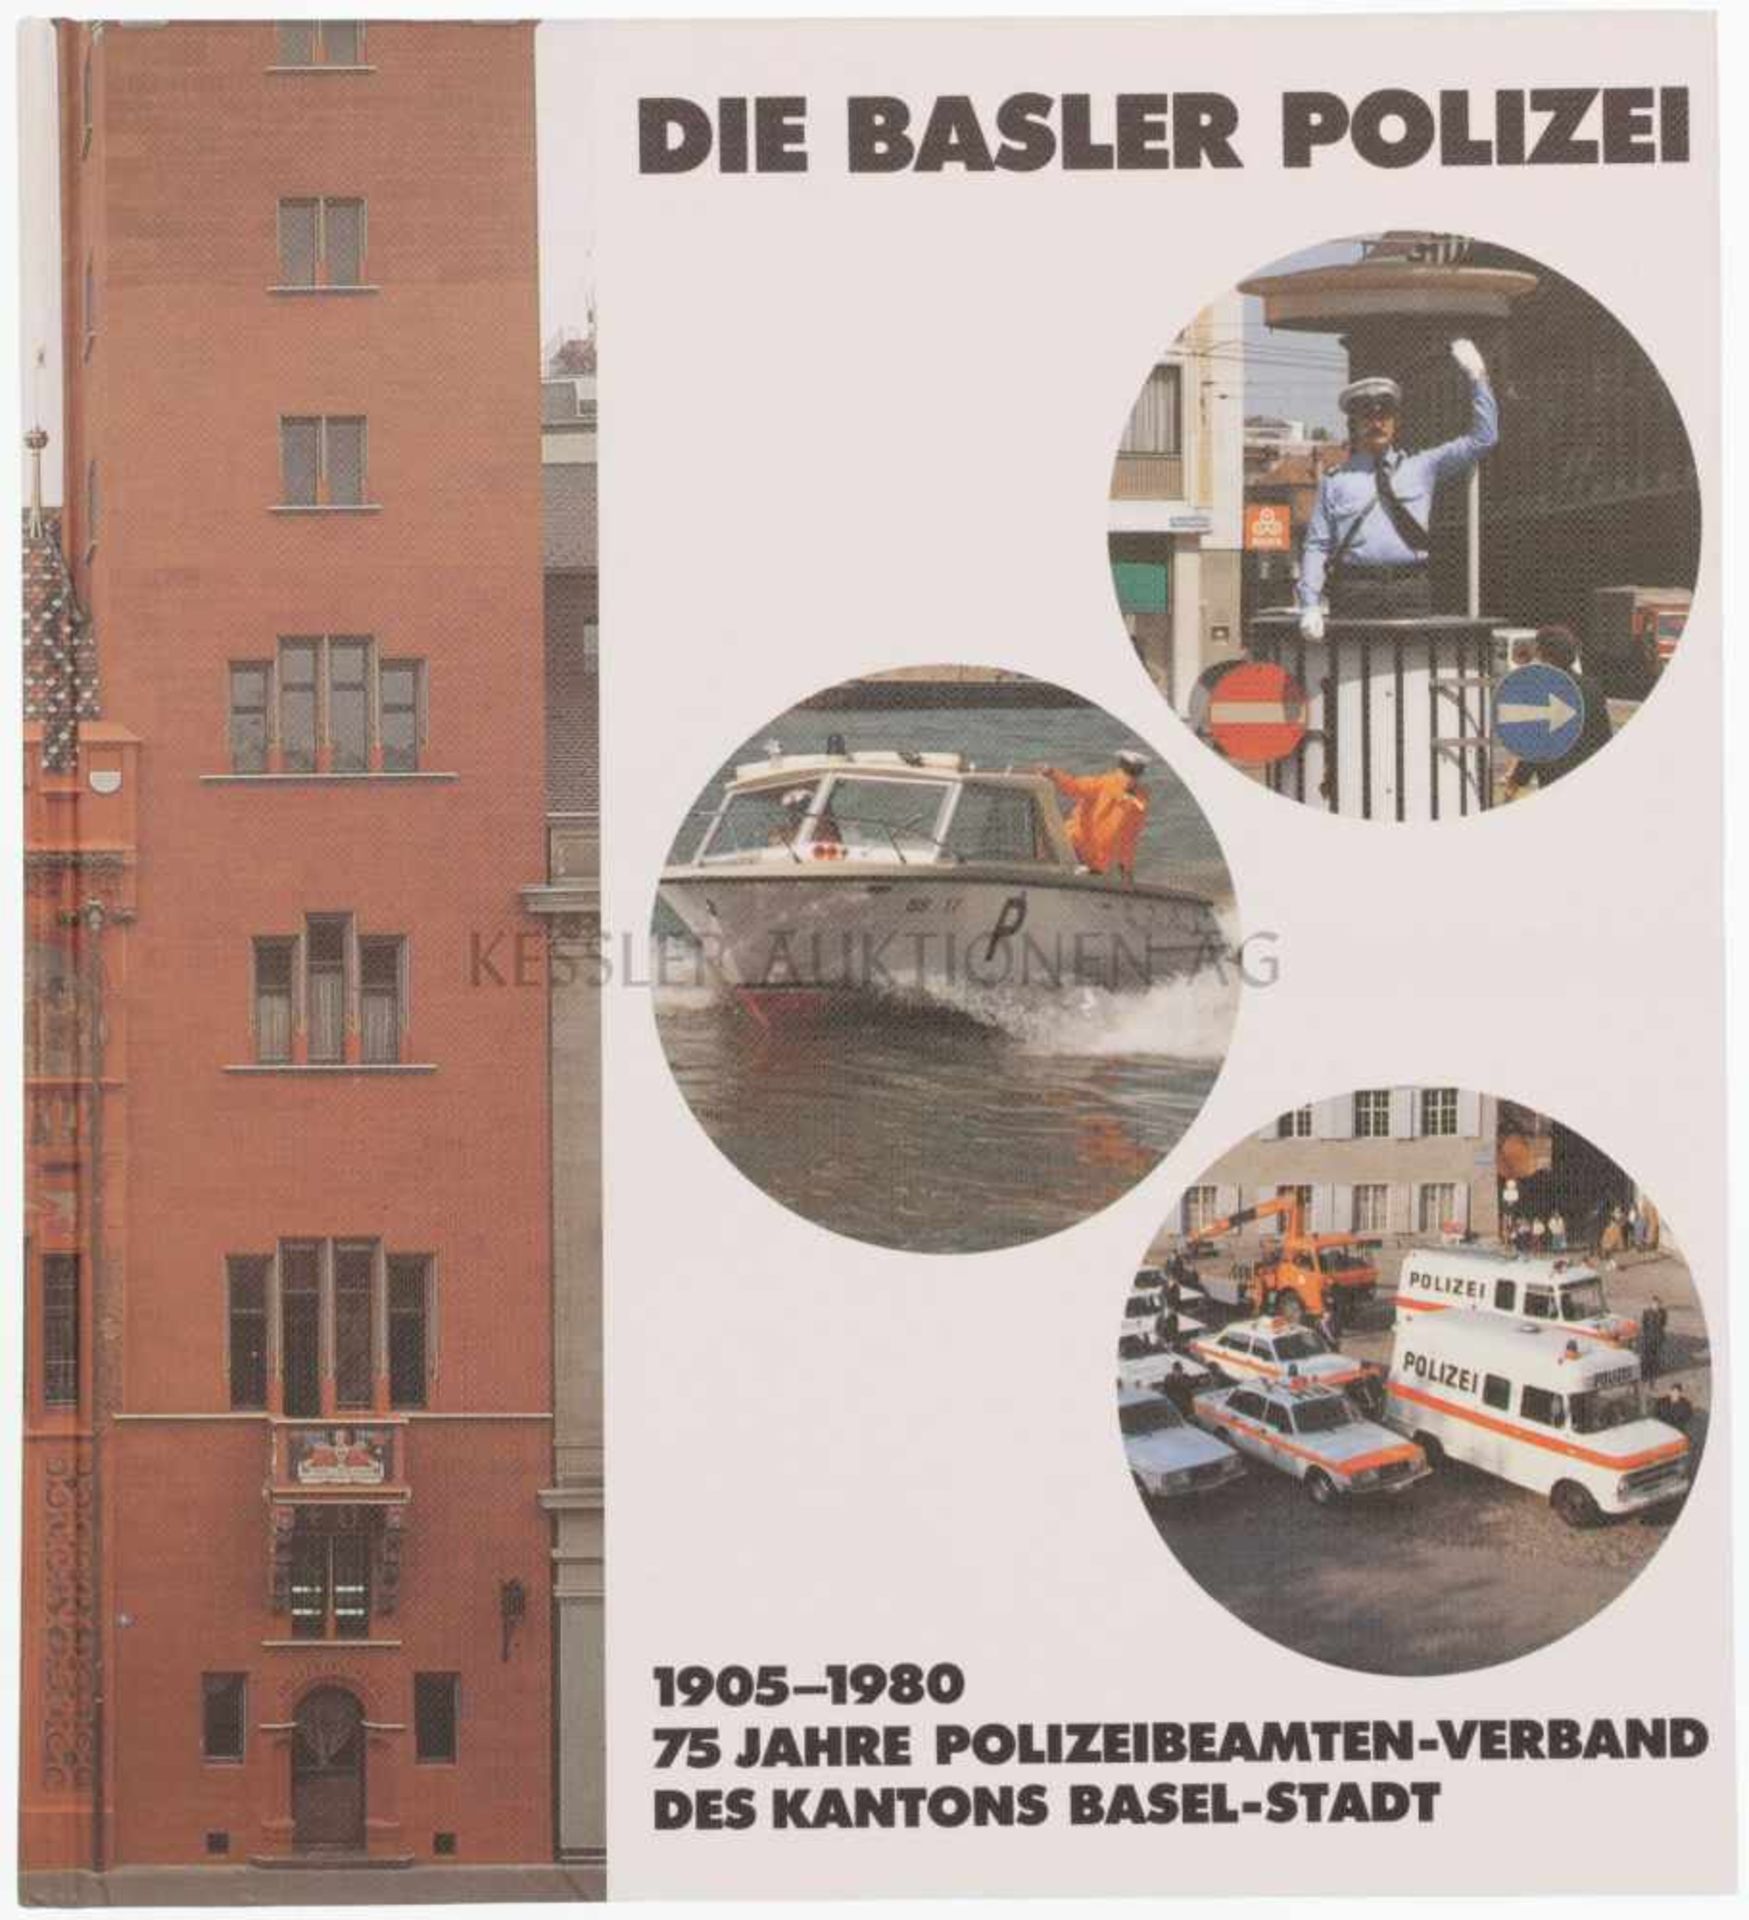 Die Basler Polizei 75 Jahre Polizeibeamten-Verband des Kantons Basel-Stadt, 1905-1980. Dokumentation